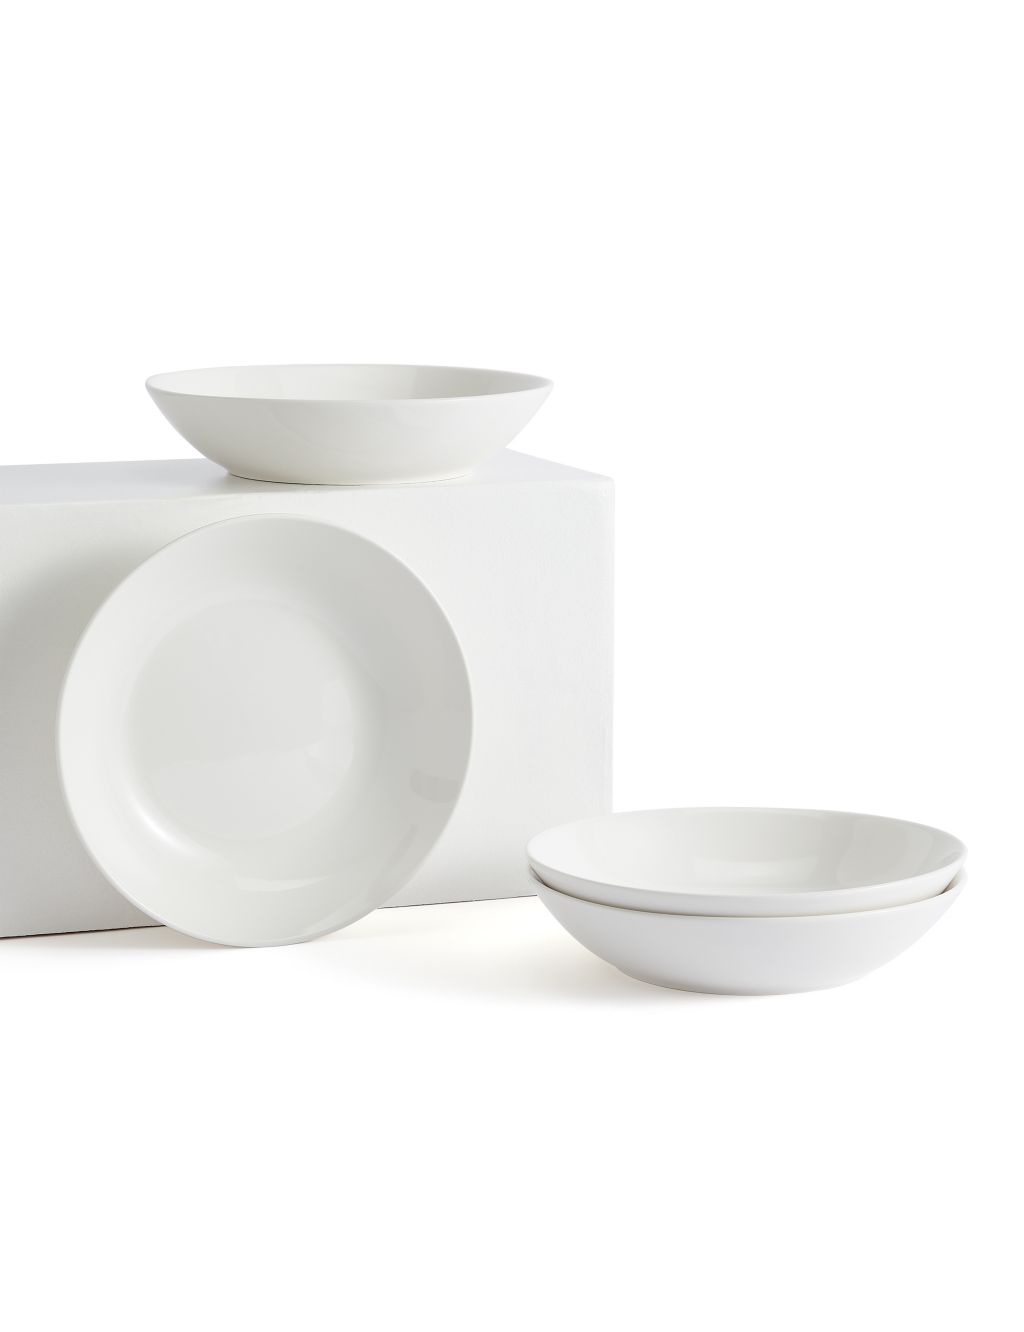 Set of 4 Porcelain Pasta Bowls